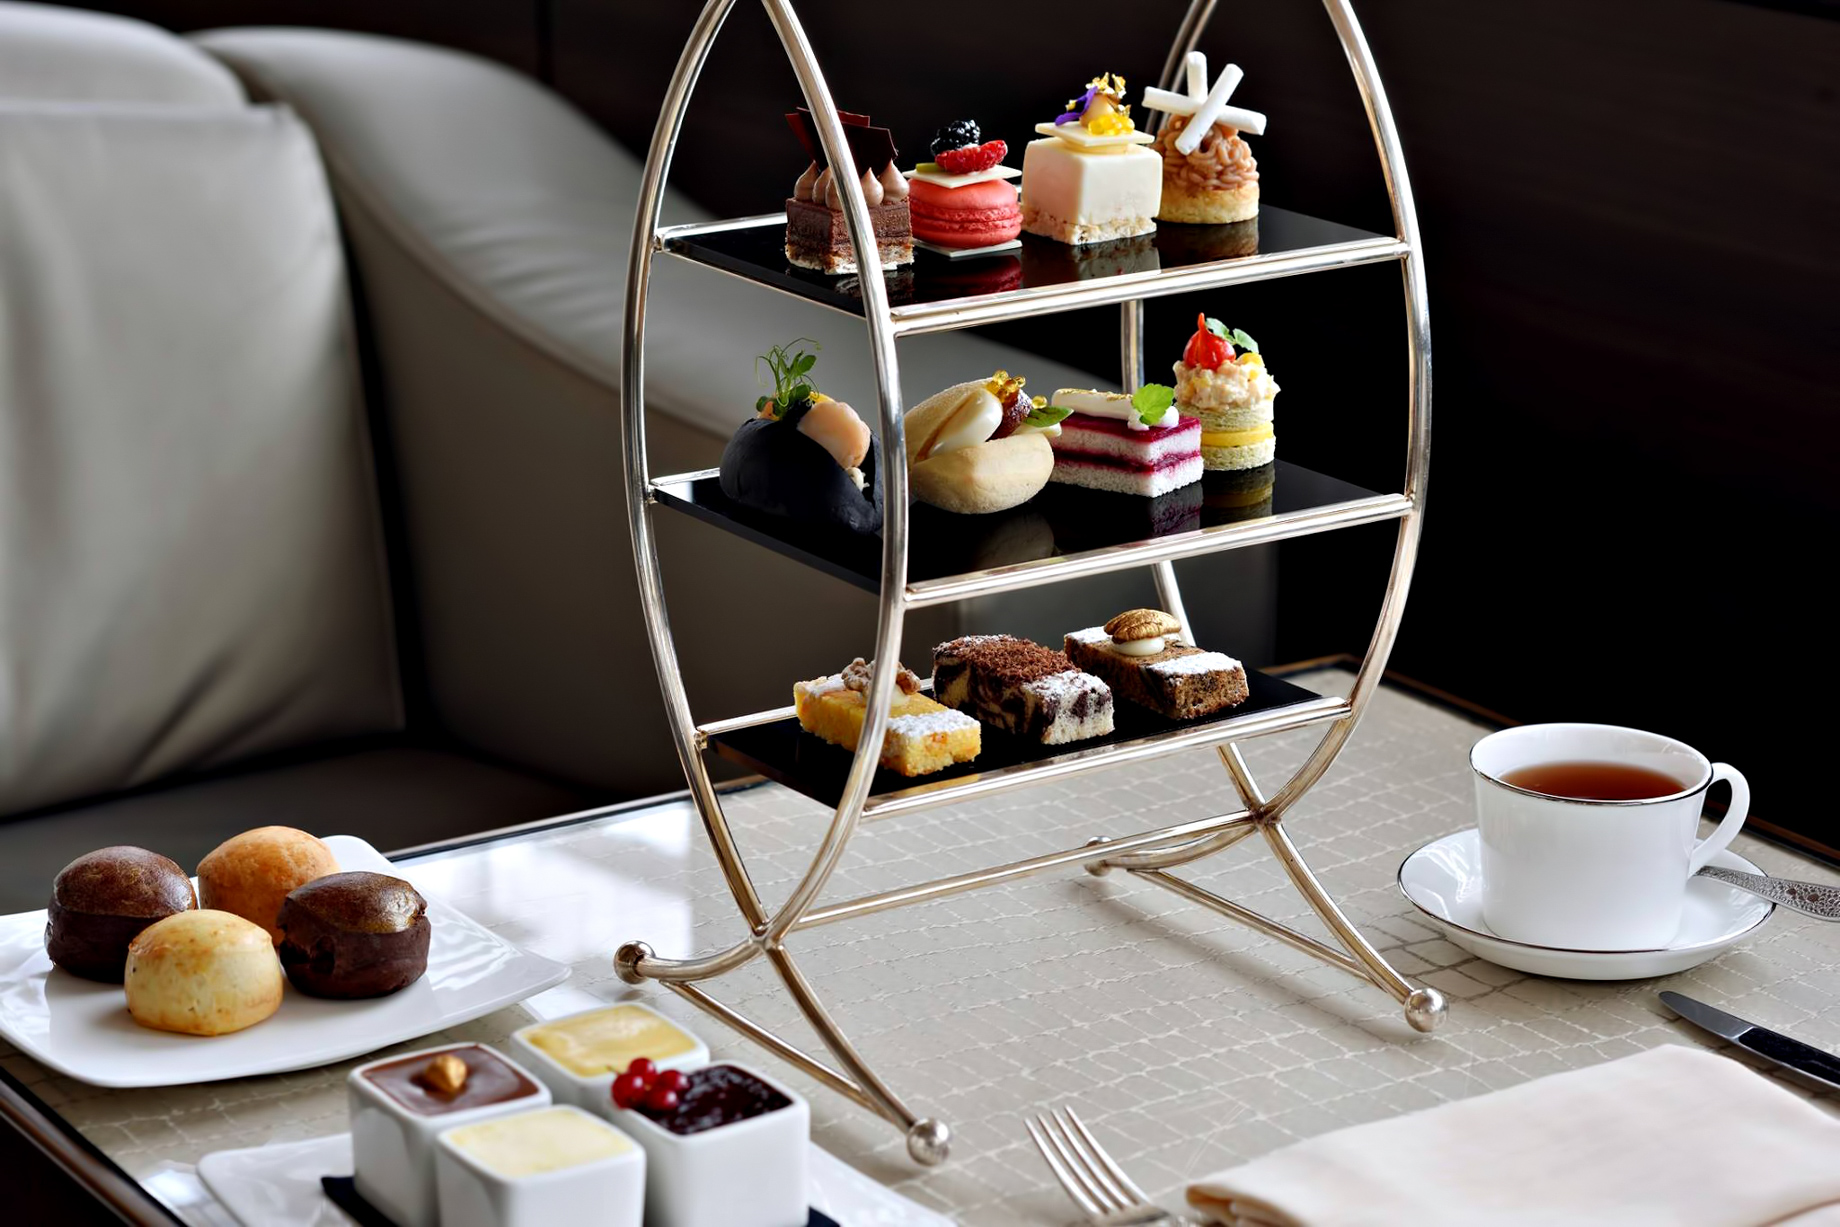 Armani Hotel Dubai – Burj Khalifa, Dubai, UAE – Armani Lounge Tea and Desserts